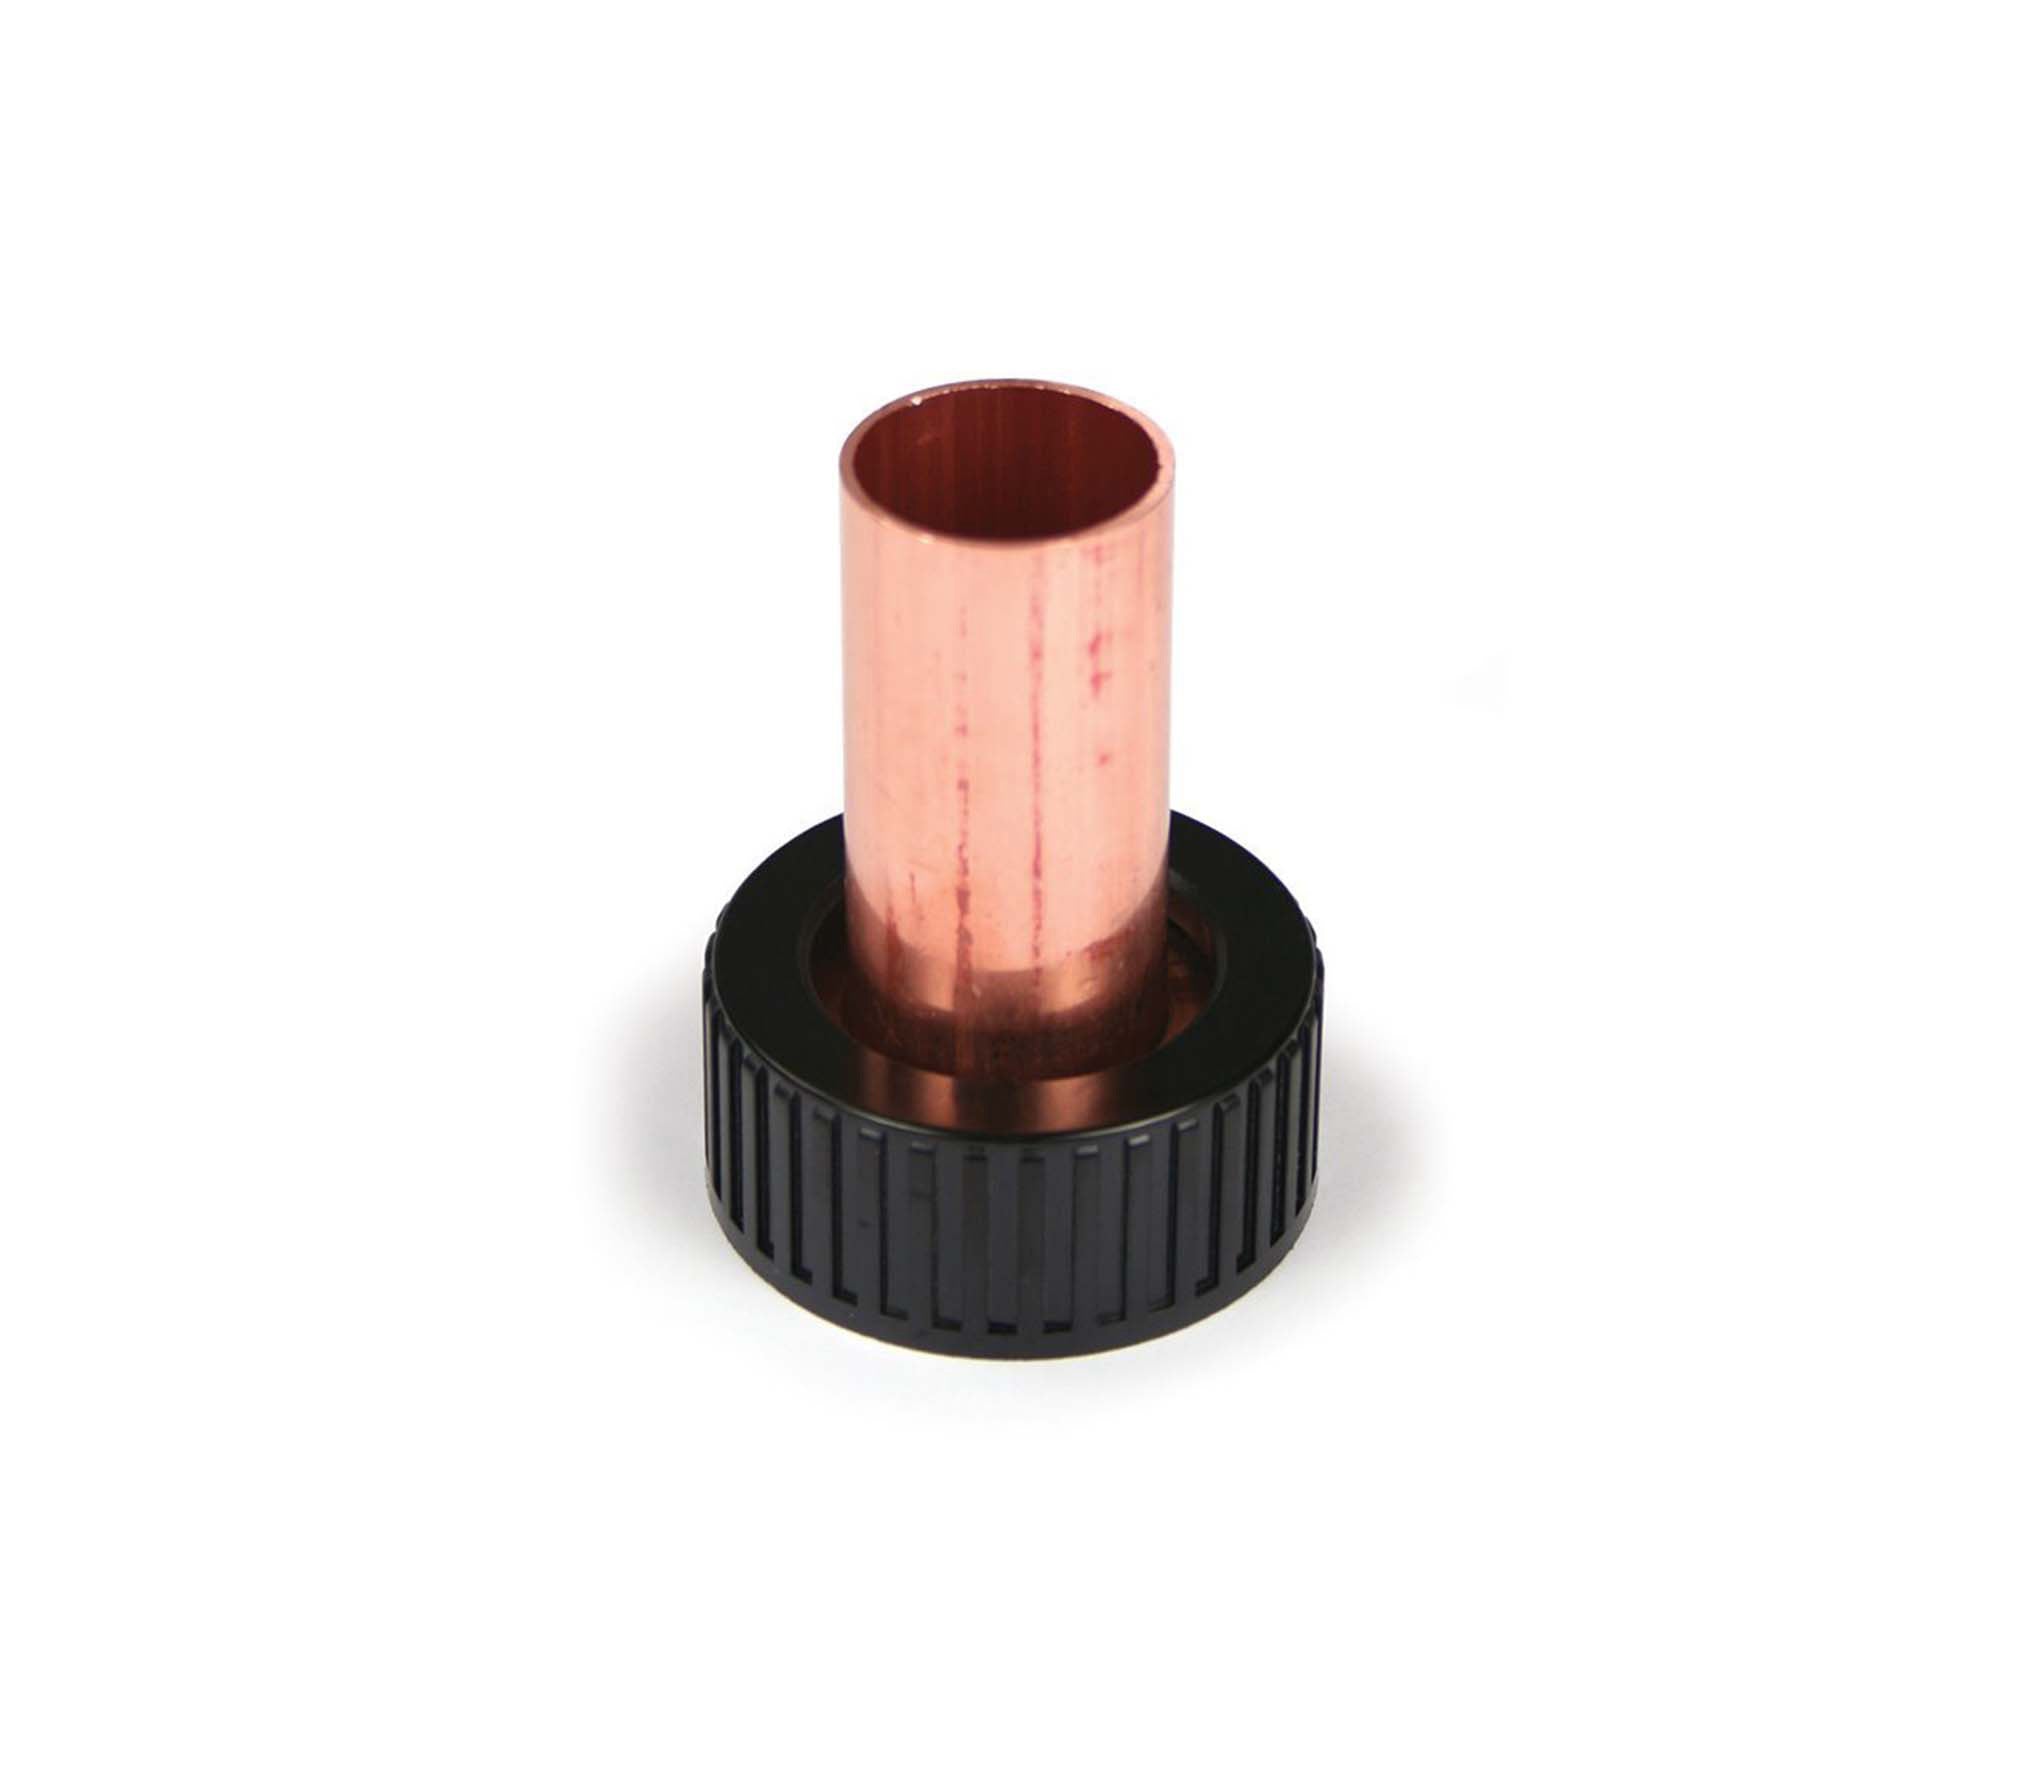 Autotrol 1.25" Copper Tail | Autotrol Water Softener Parts | Autotrol